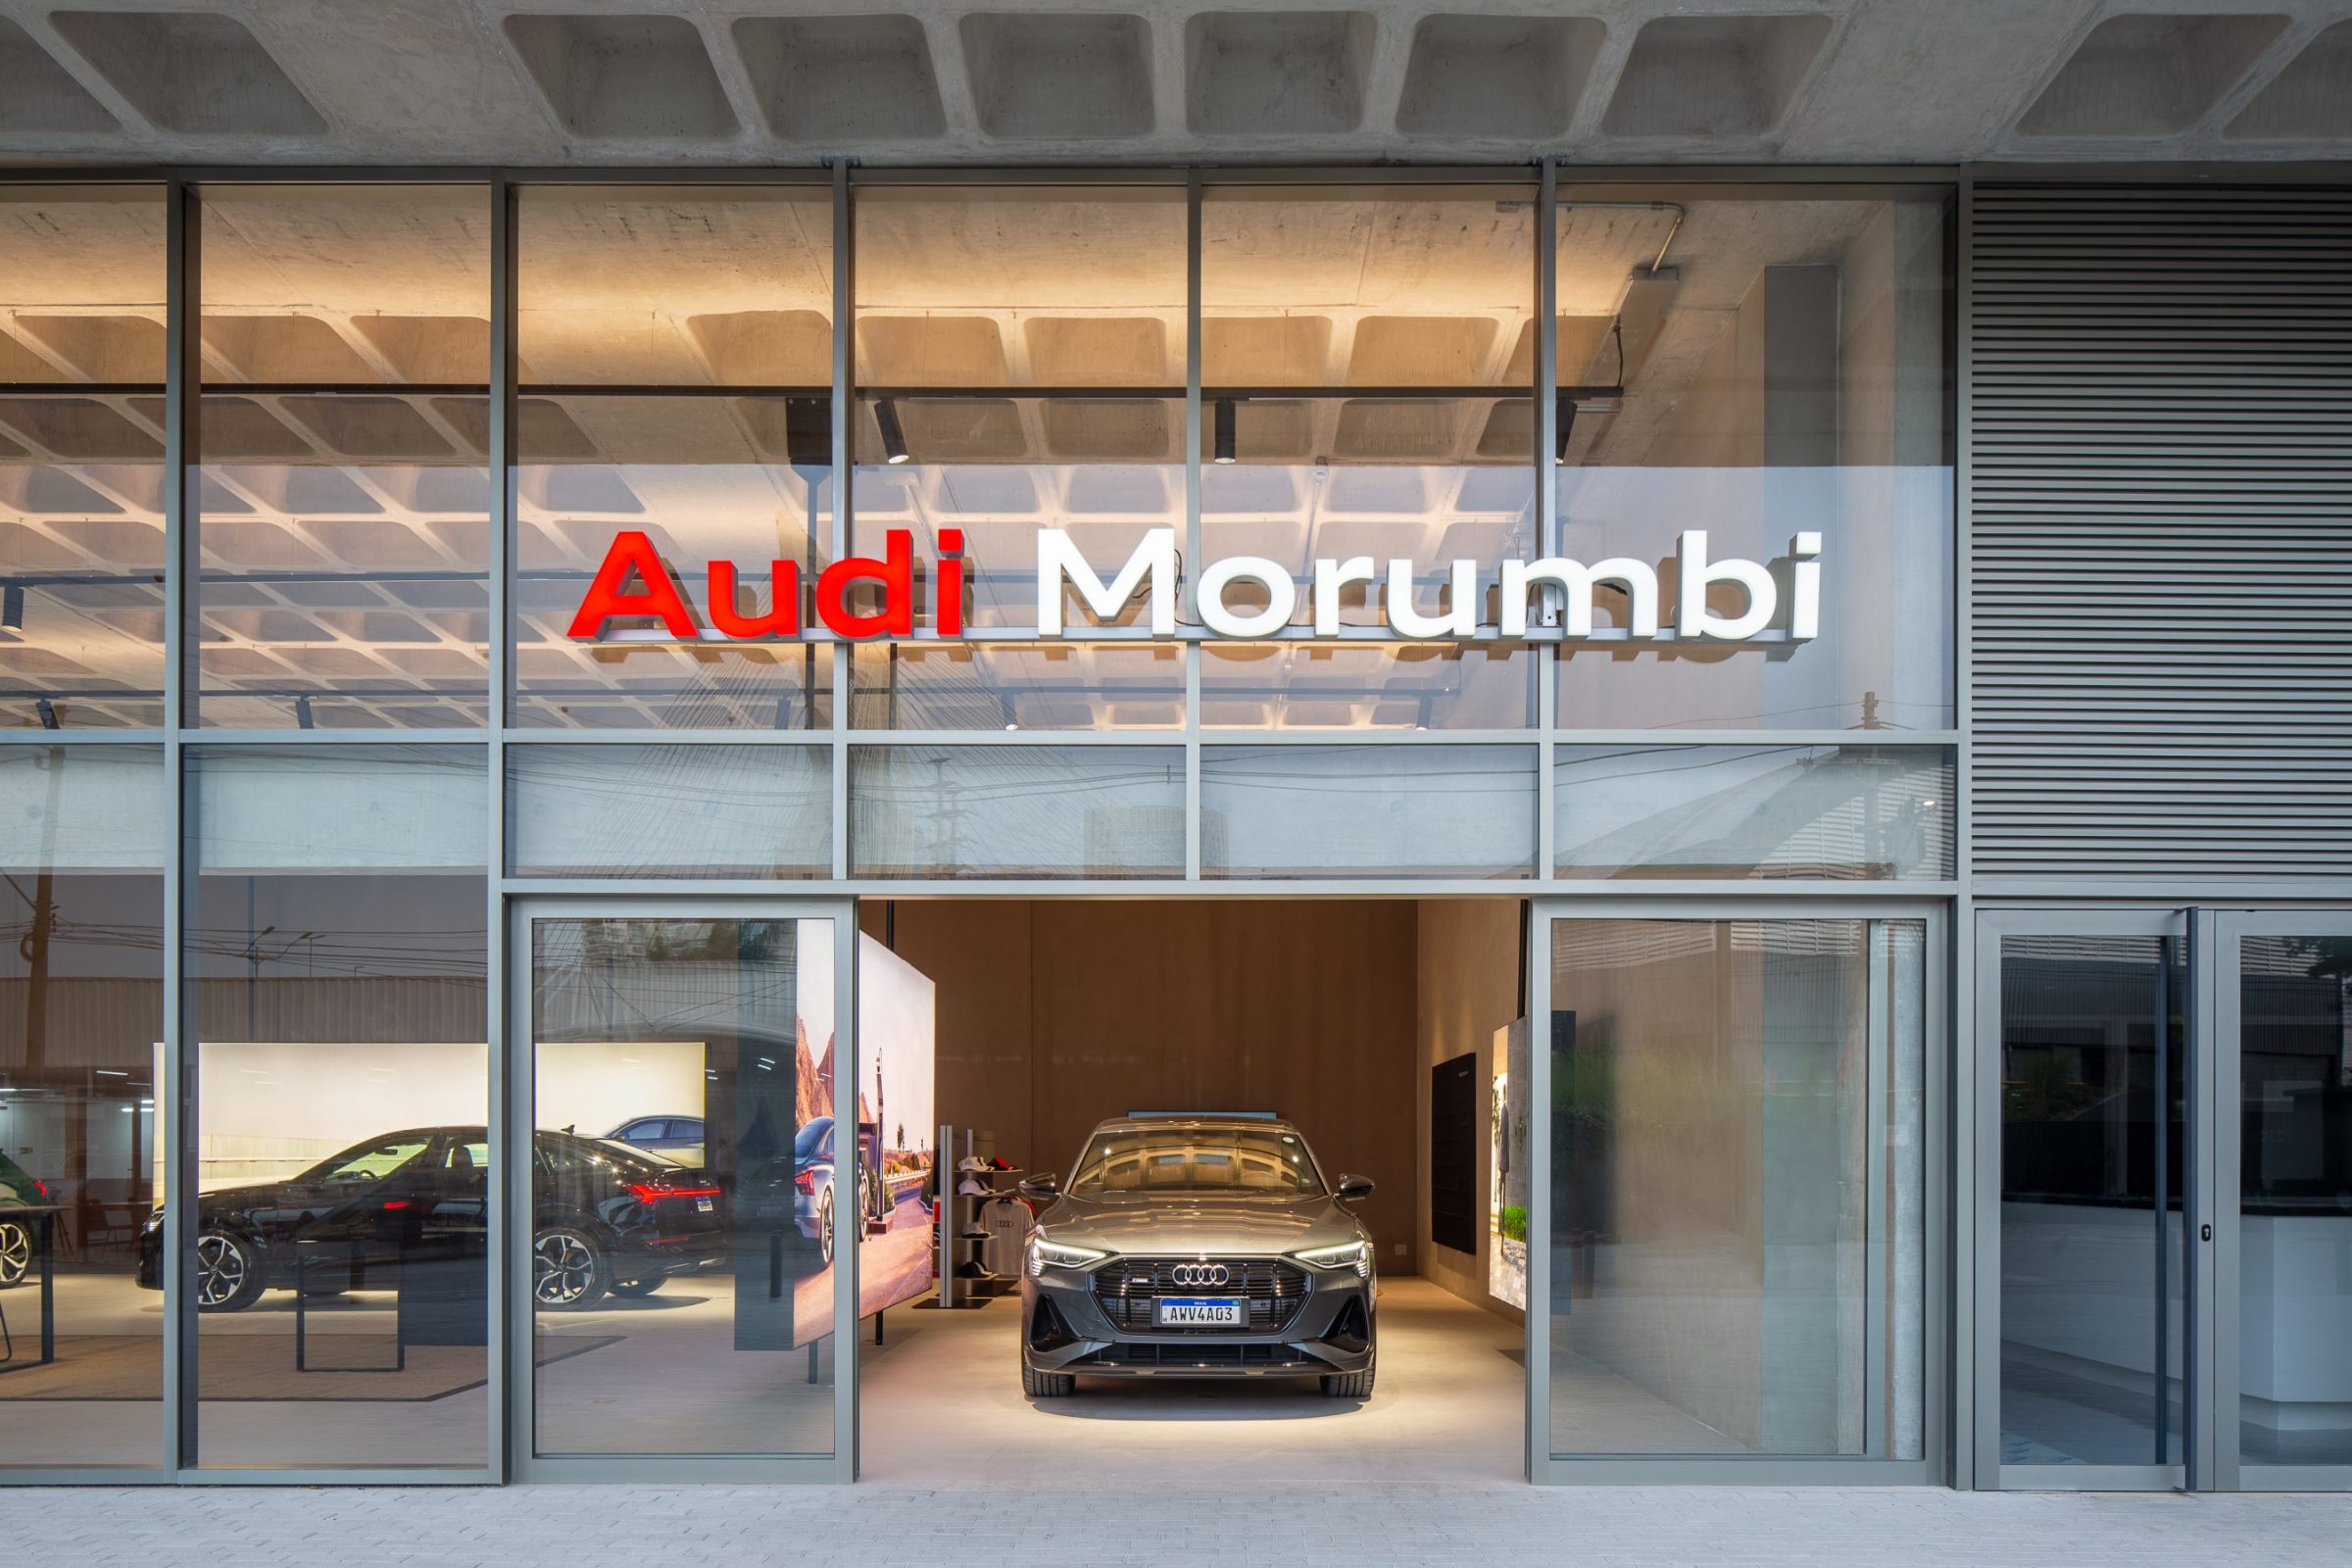 Audi inaugura nova concessionária no Brasil com novo conceito